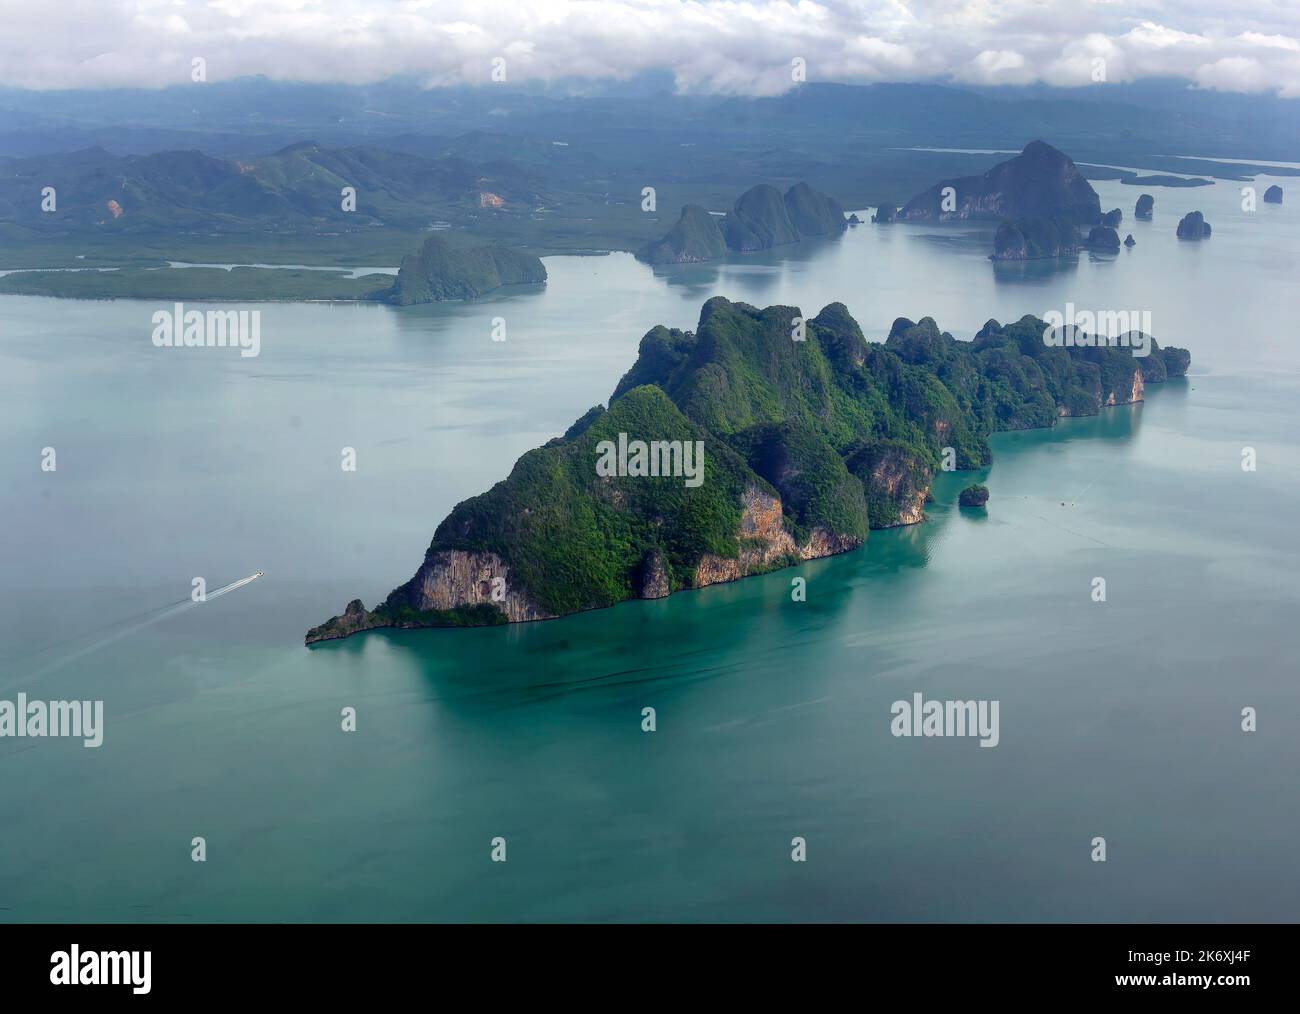 Vue aérienne survolant un groupe d'îles vertes tropicales dans la baie de Phang Nga, la mer d'Andaman en Thaïlande, paysage marin, vert et bleu, couleur turquoise Banque D'Images